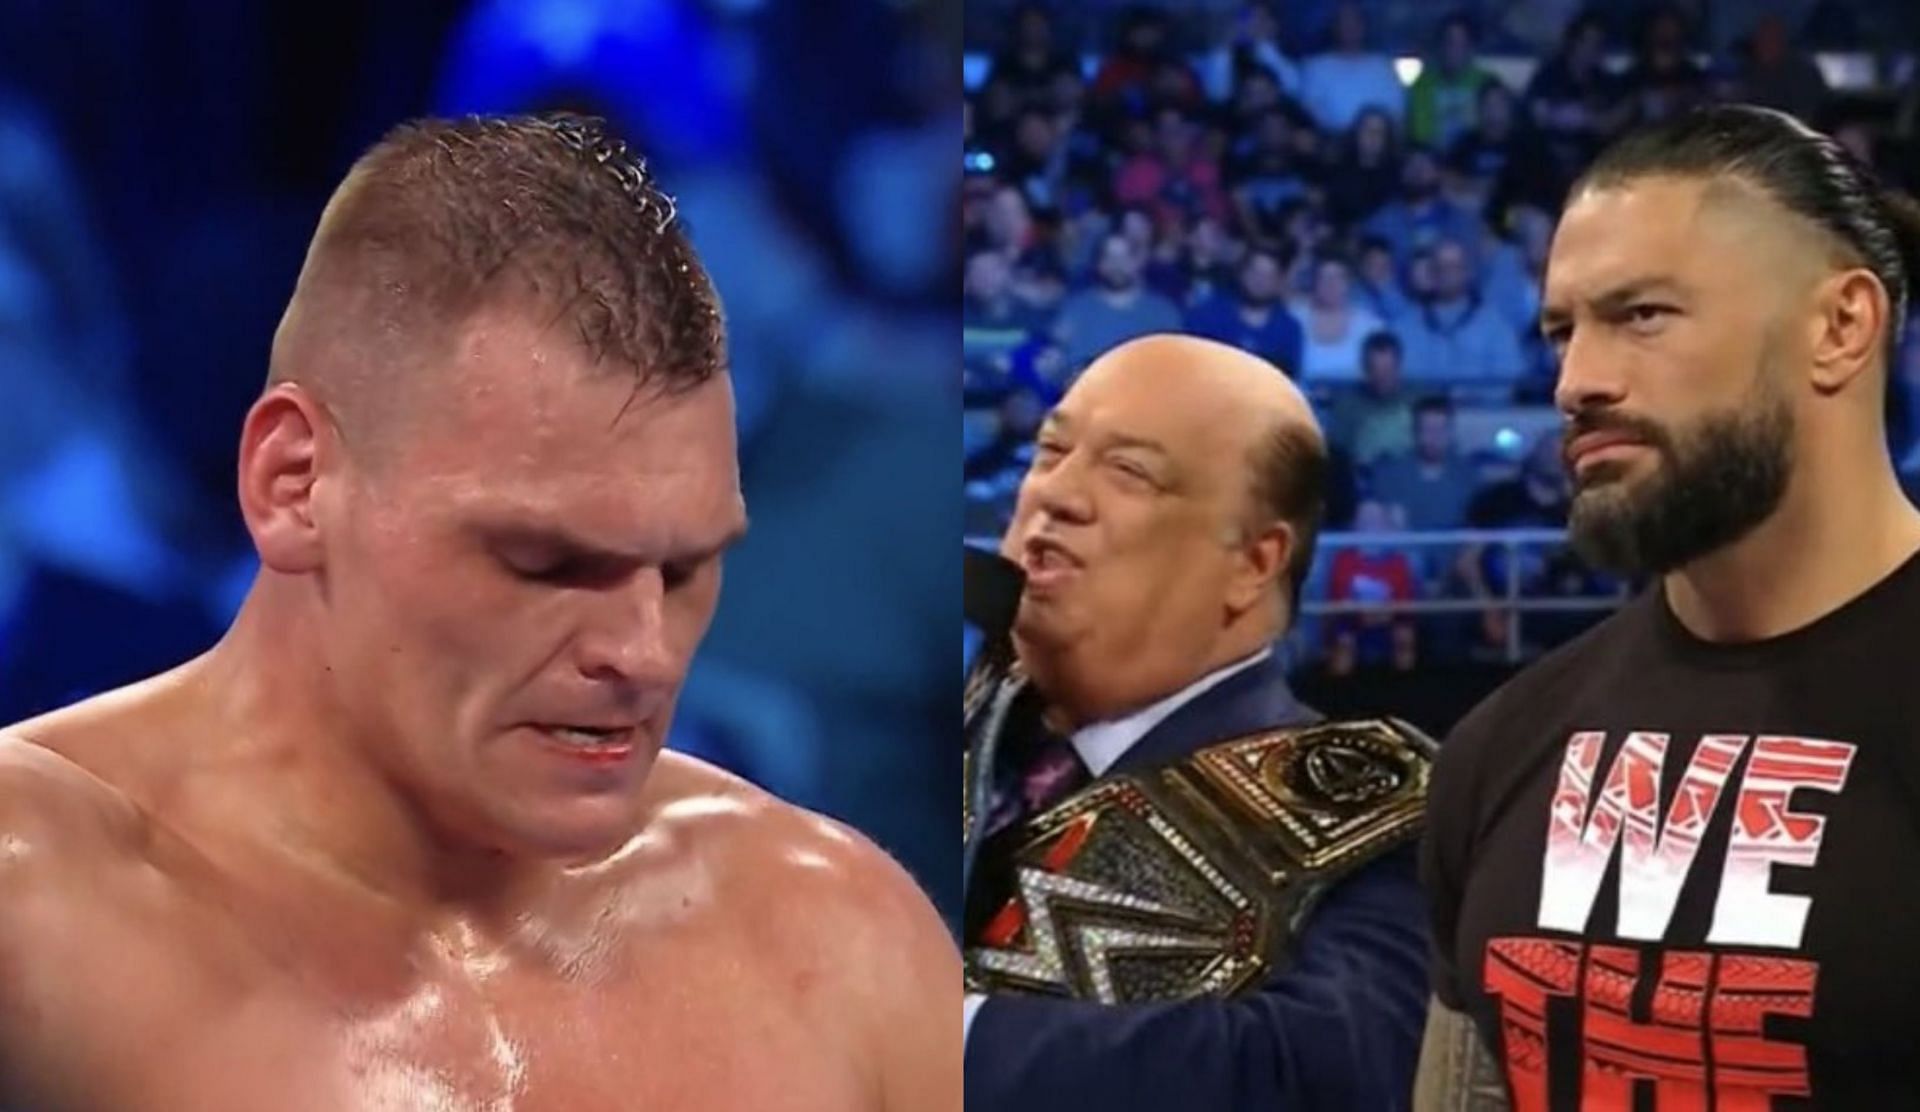 WWE SmackDown के एपिसोड में कई बढ़िया चीज़ें देखने को मिली 